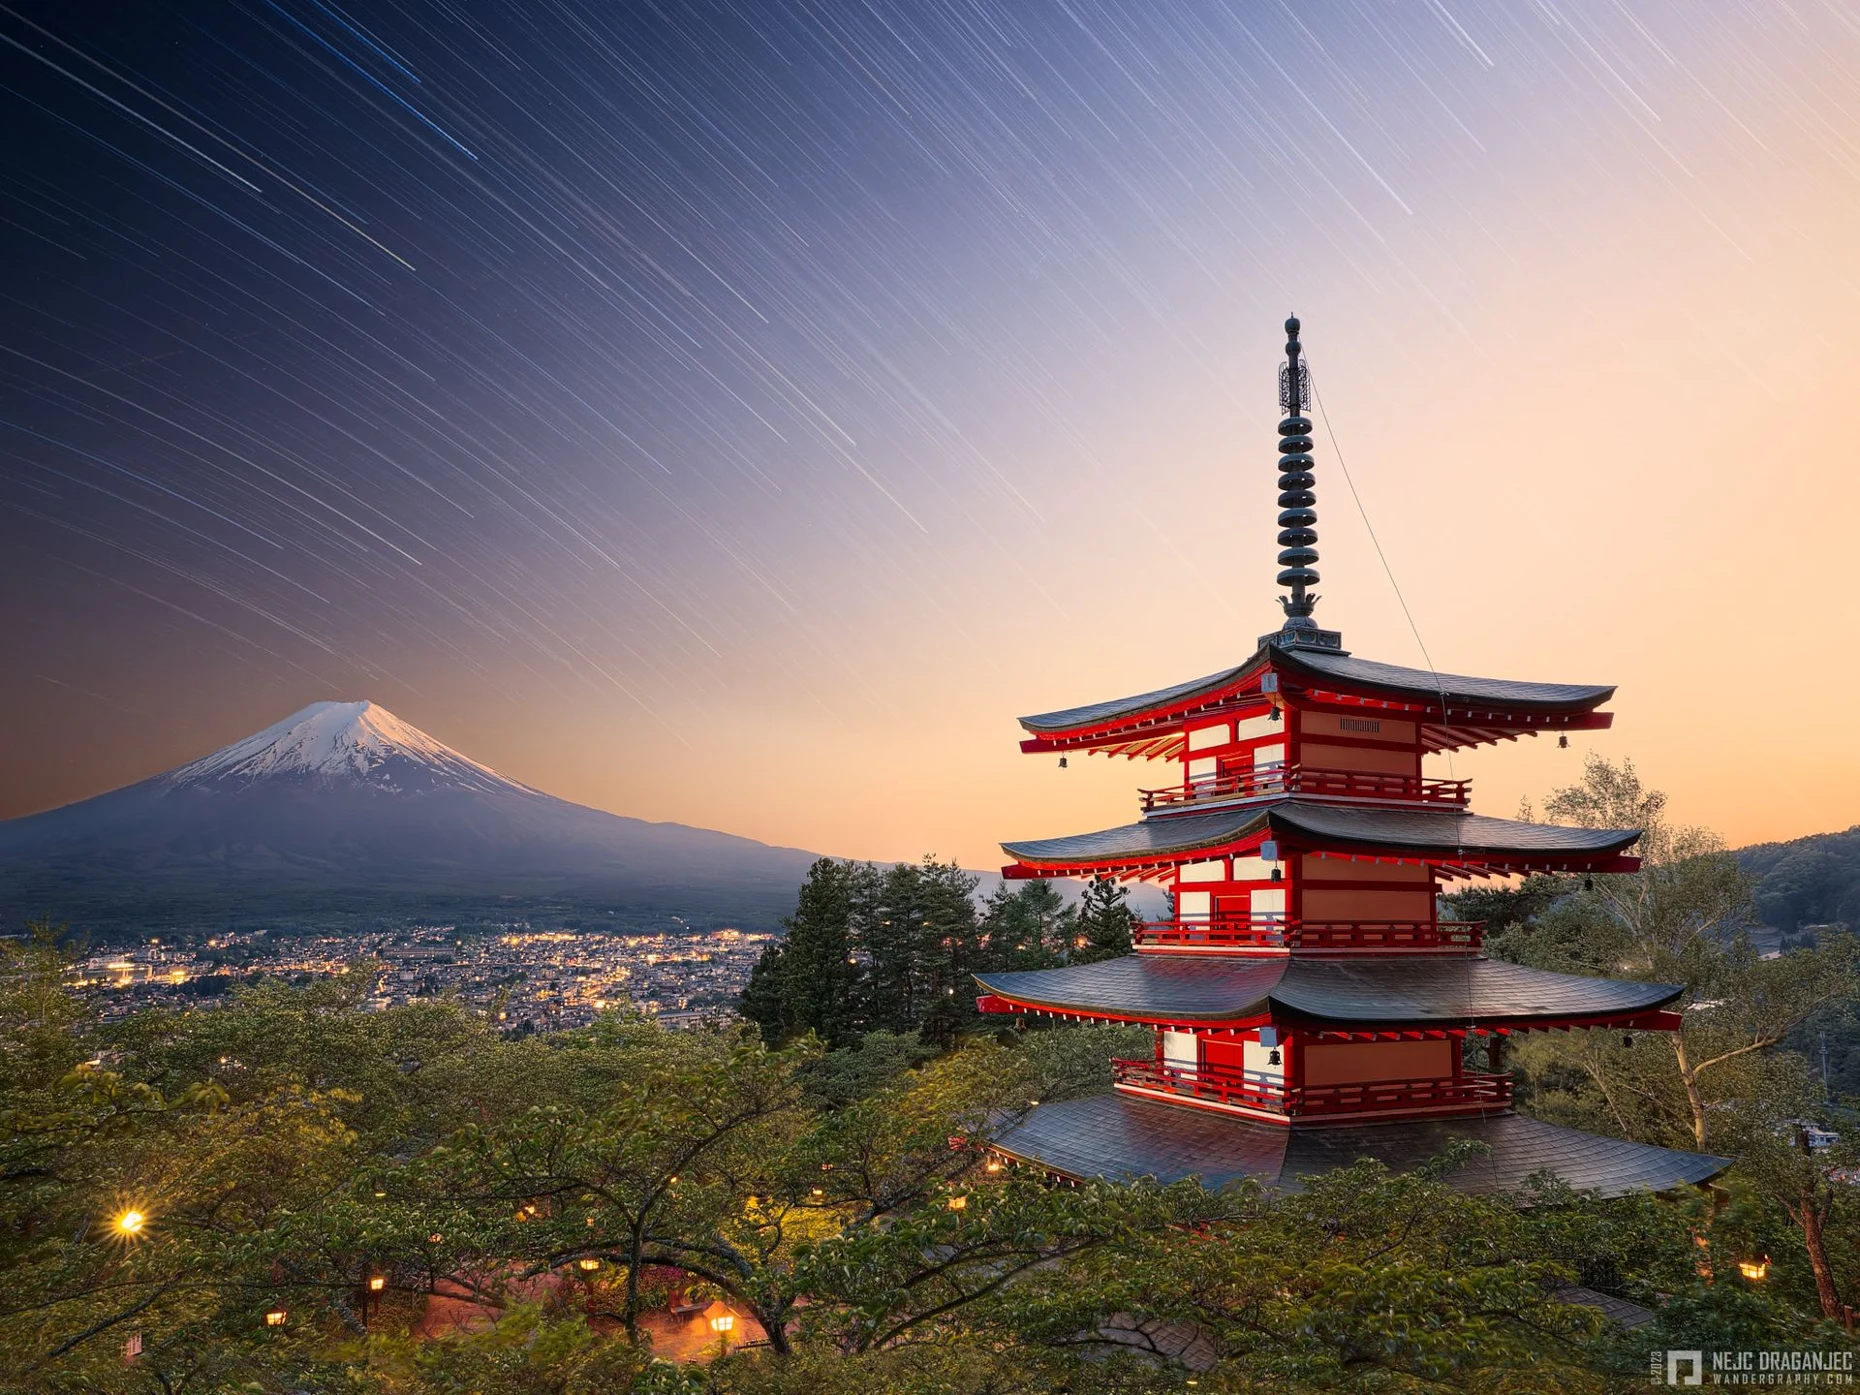 Chureito Pagoda in Japan